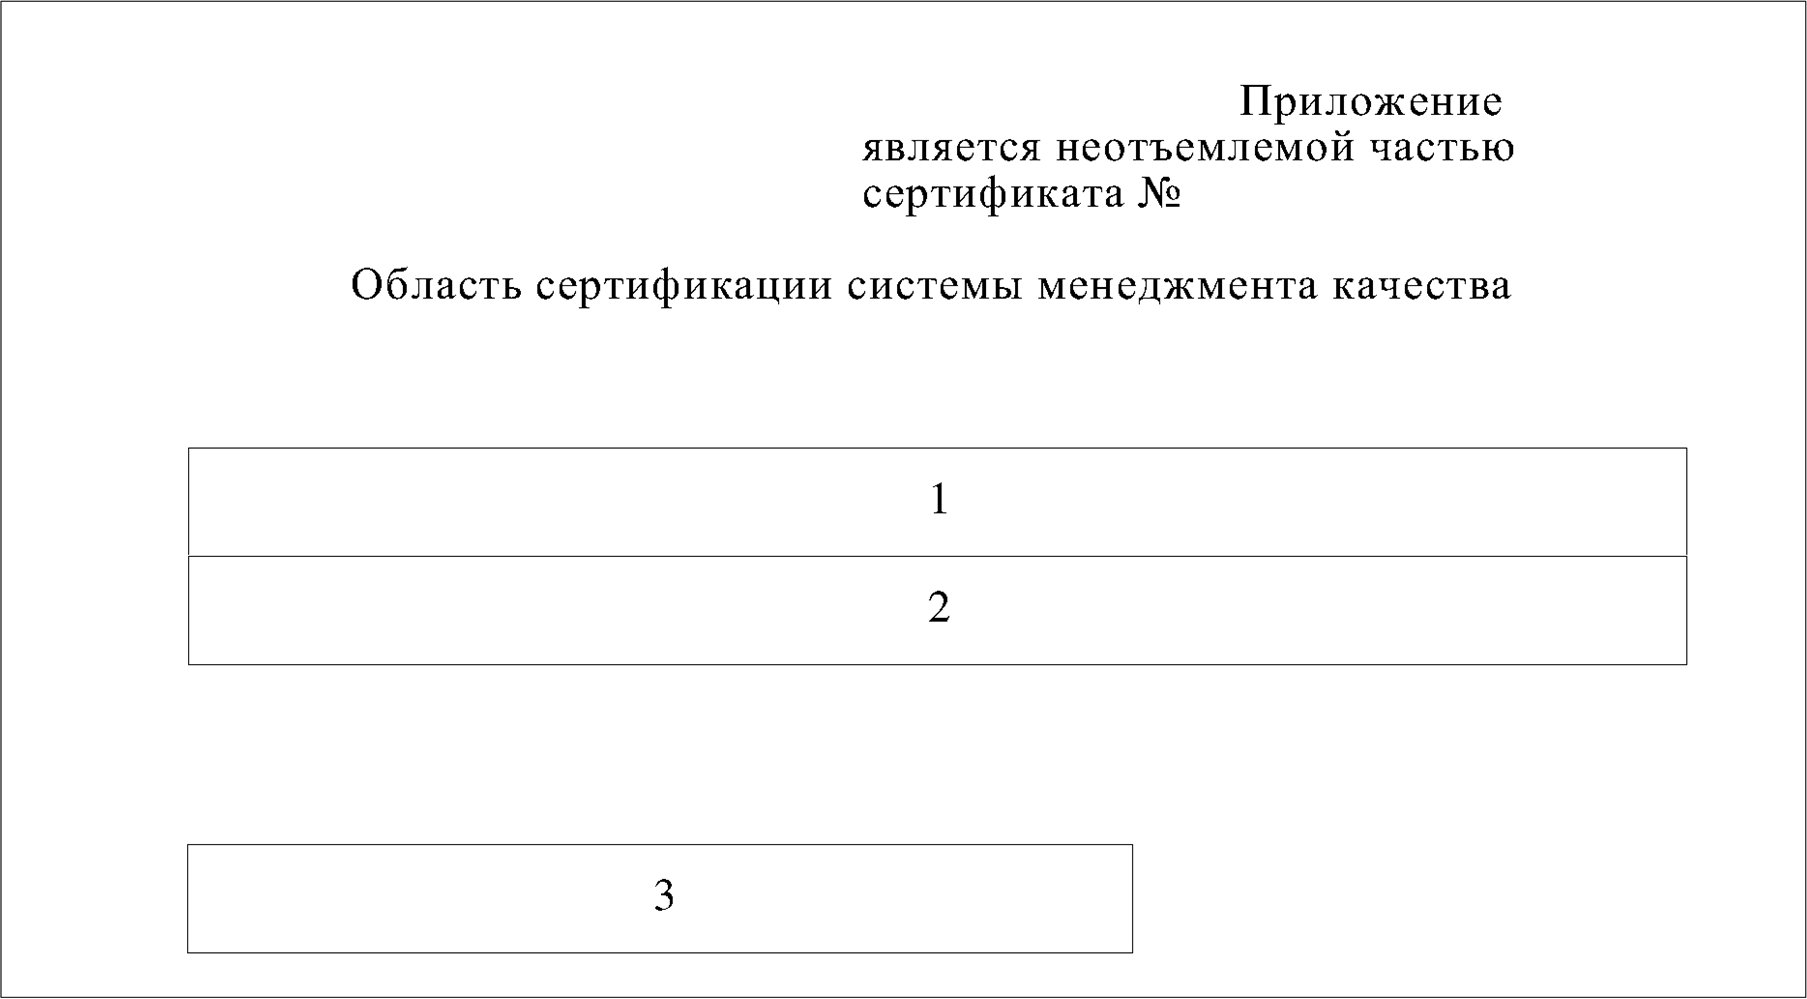 Форма приложения к сертификату соответствия (на русском языке)